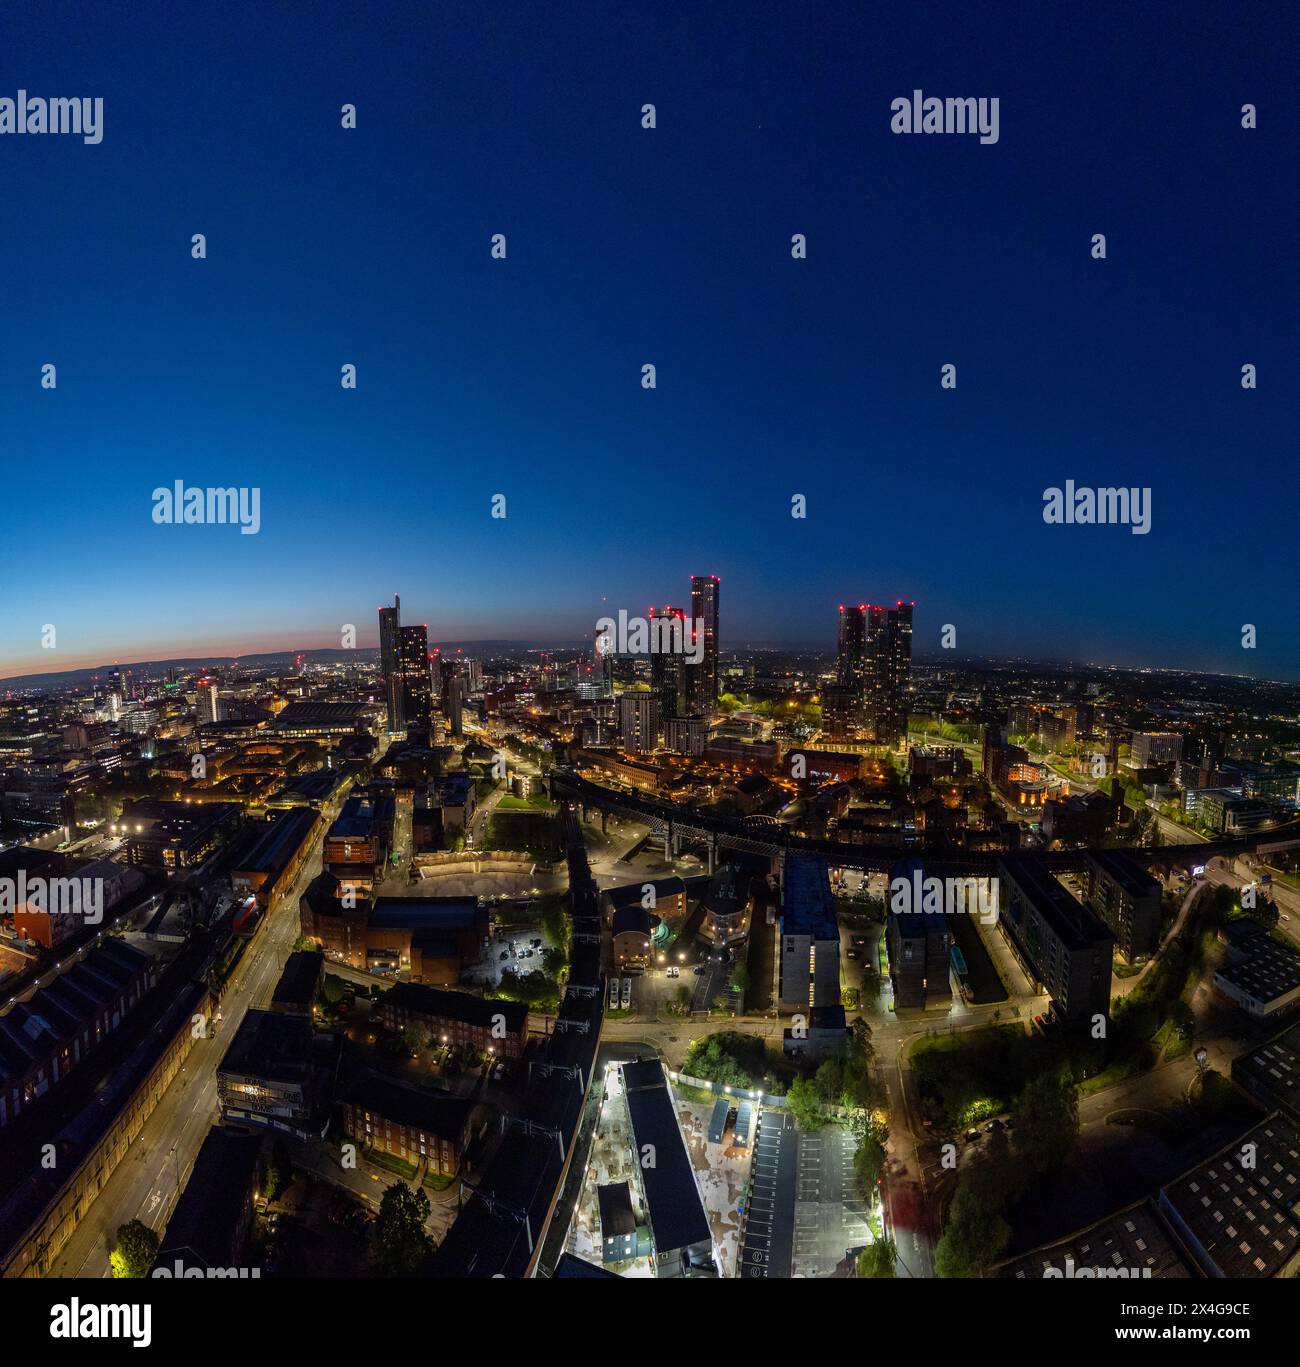 Gratte-ciel de Manchester au crépuscule avec des bâtiments illuminés Banque D'Images